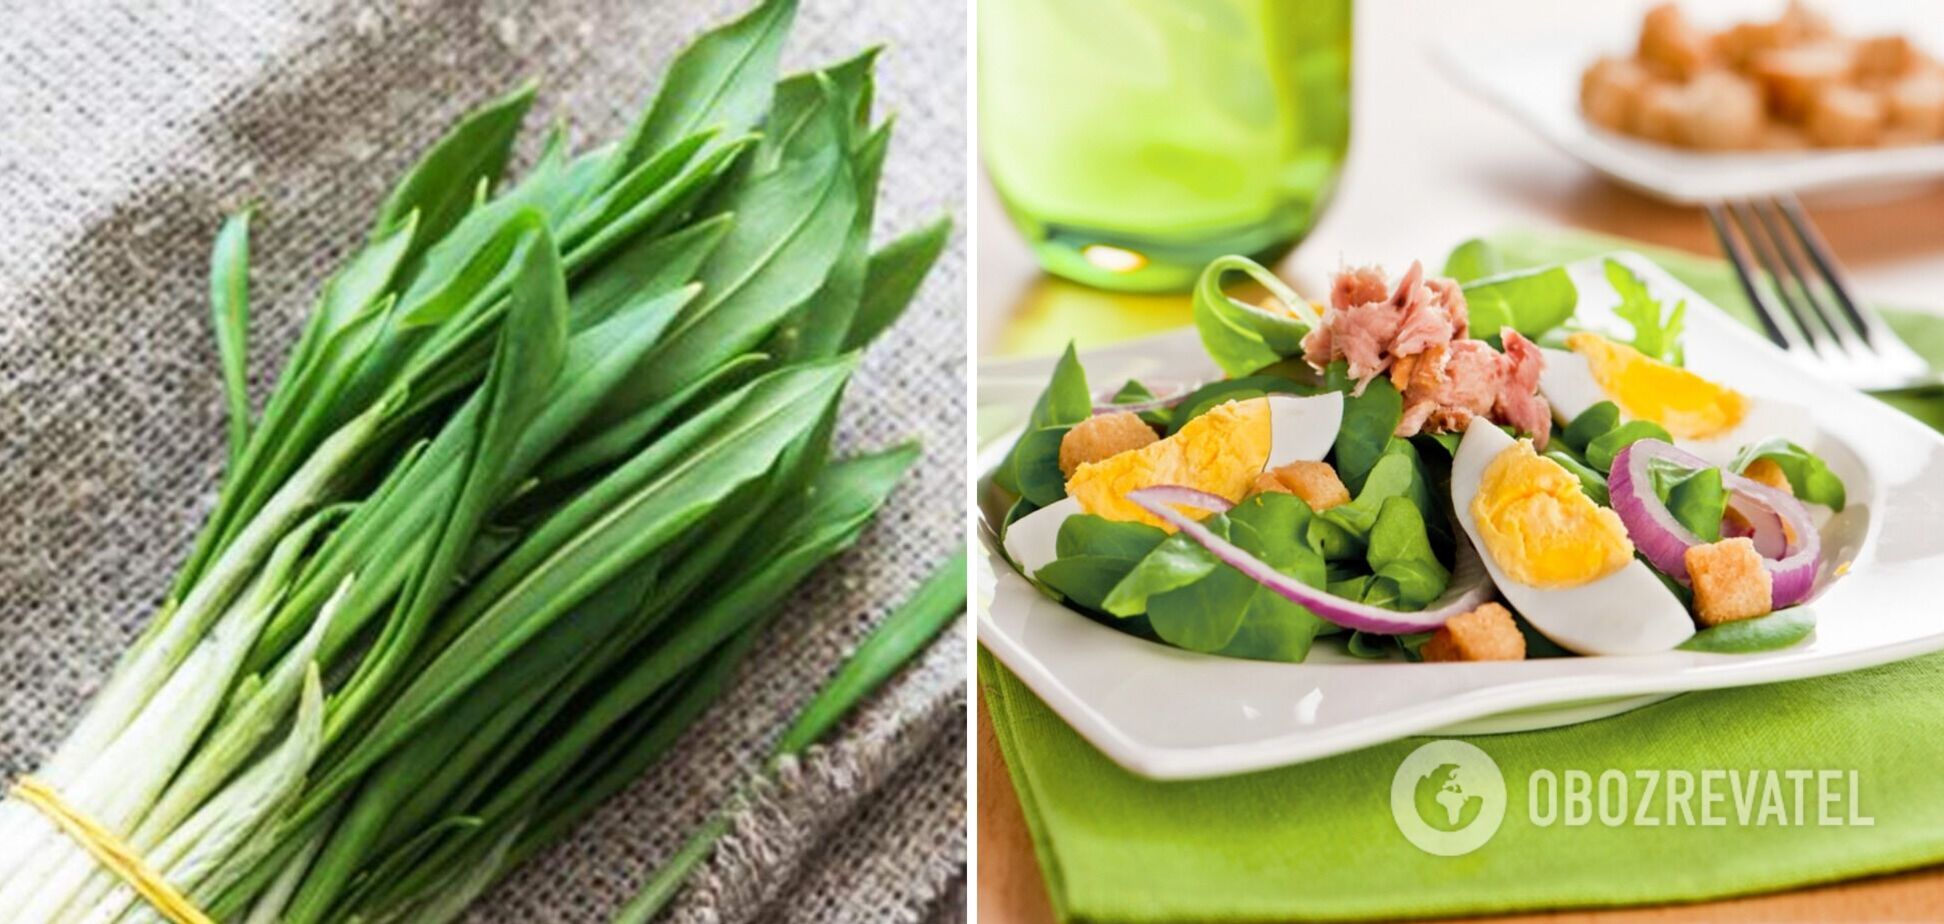 З чим приготувати черемшу: рецепти сезонних вітамінних салатів